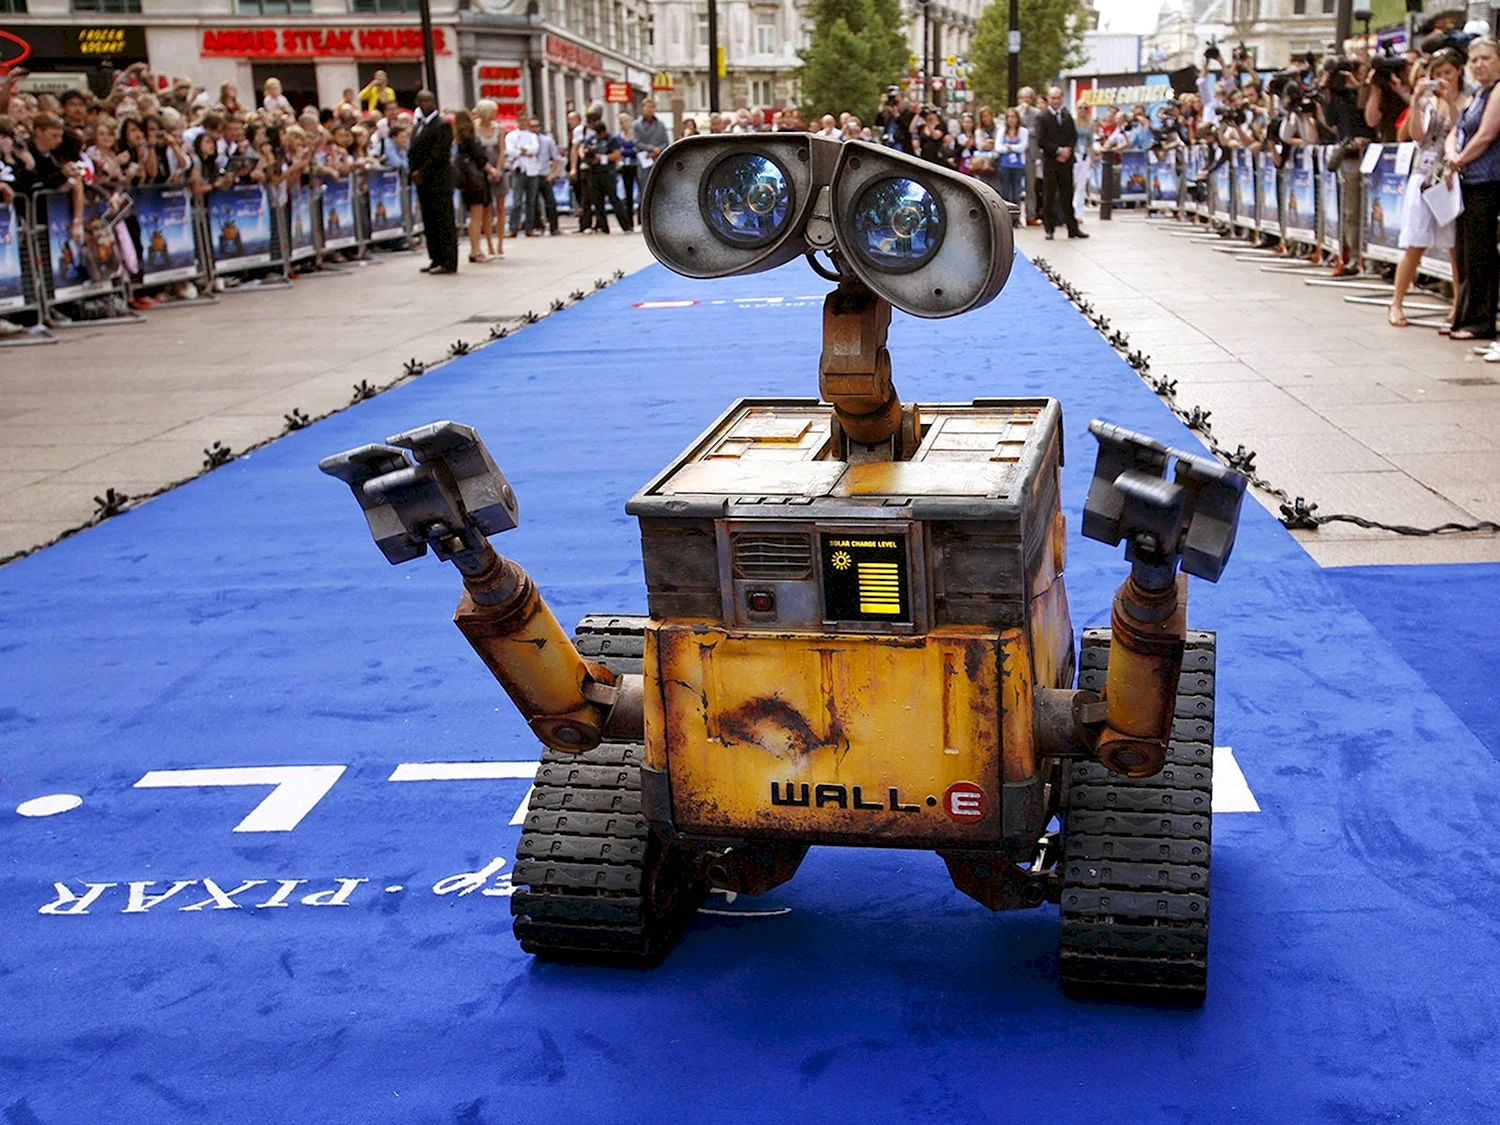 Wall-e 2